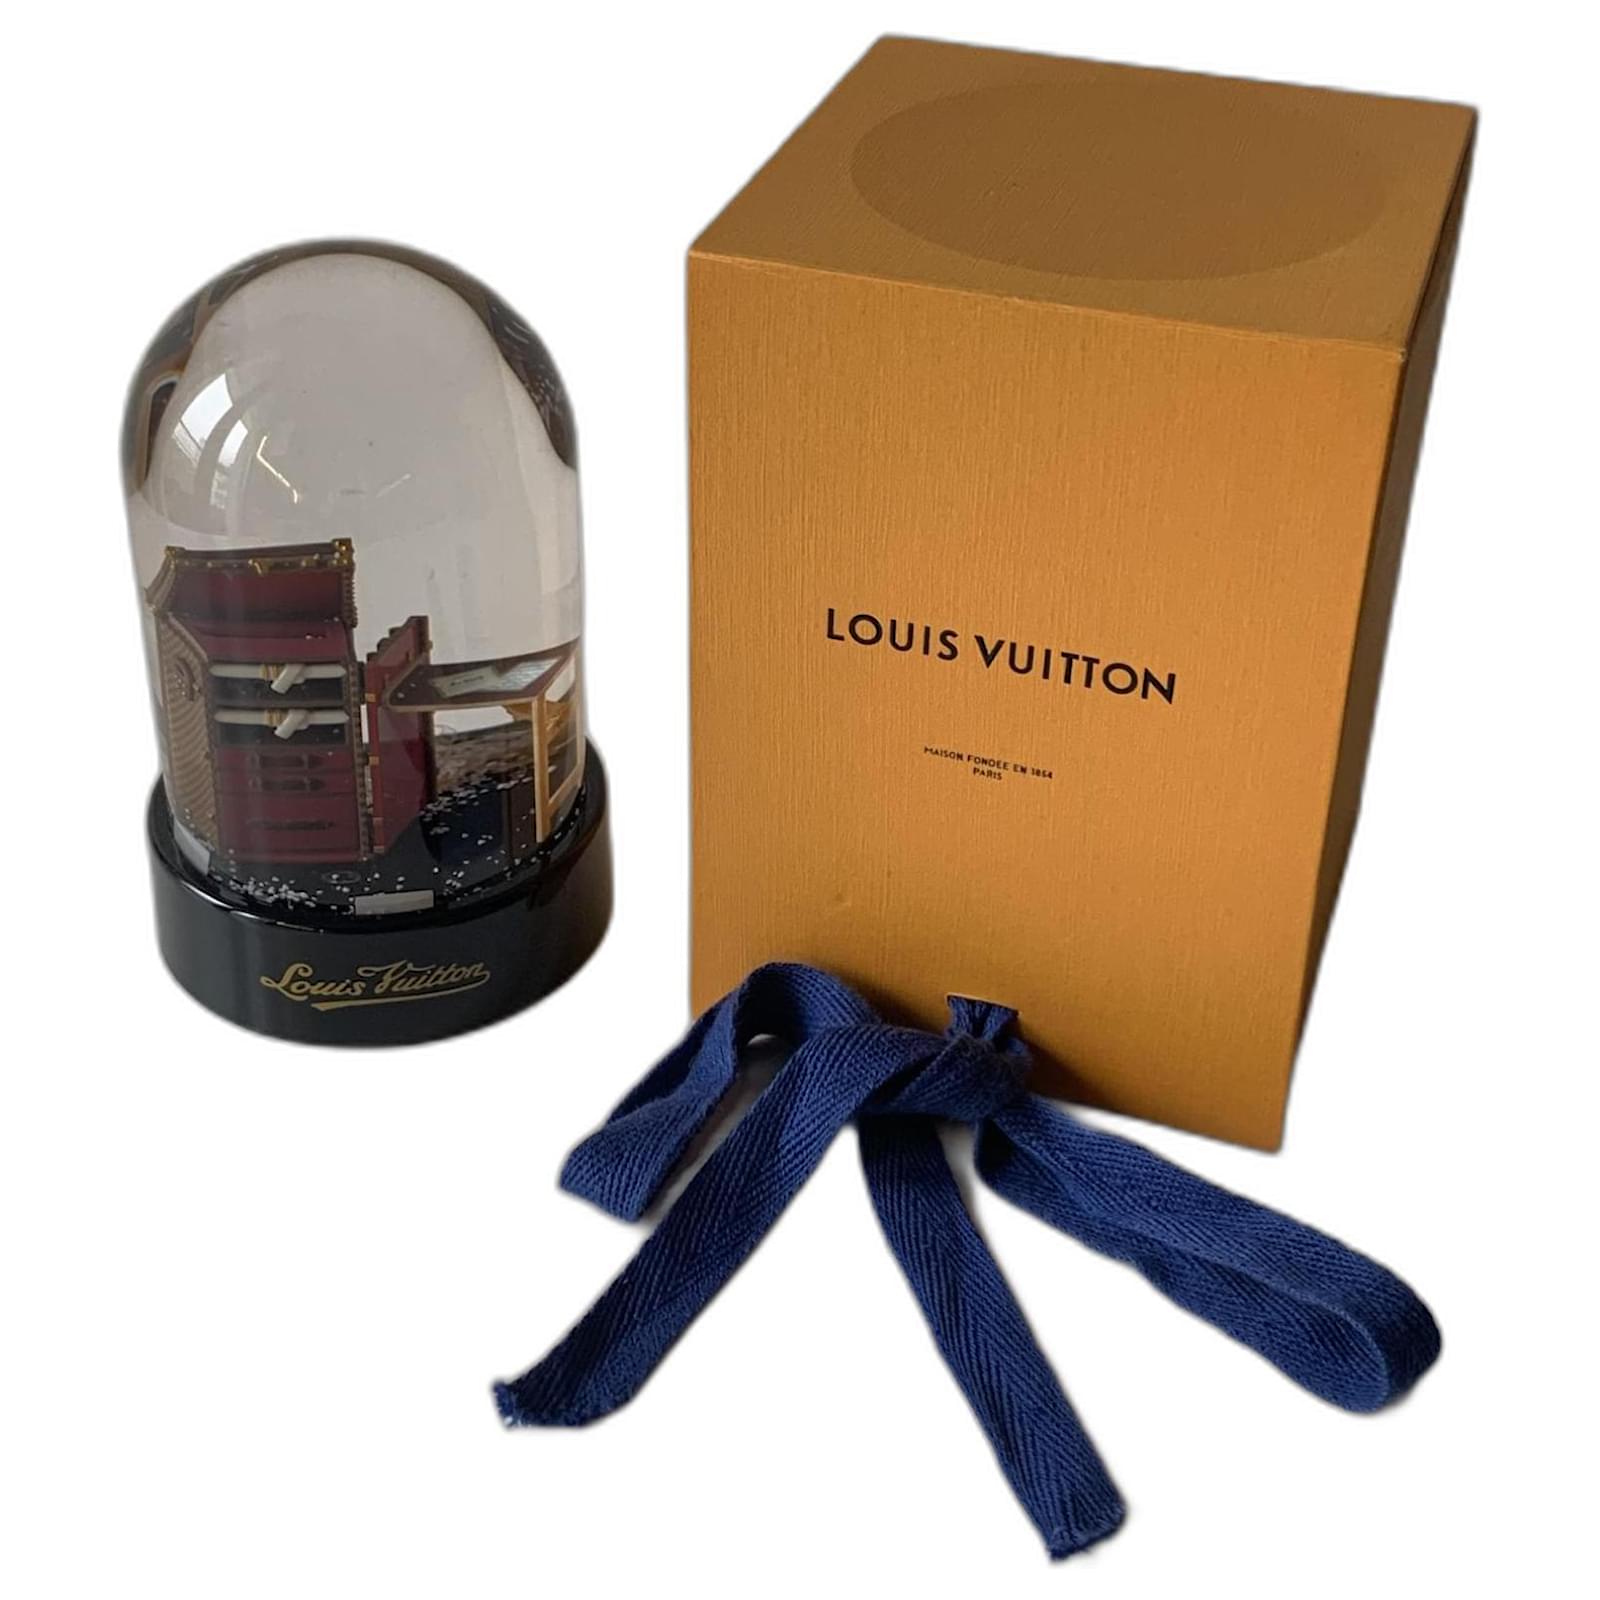 Louis Vuitton Stokowski snow globe